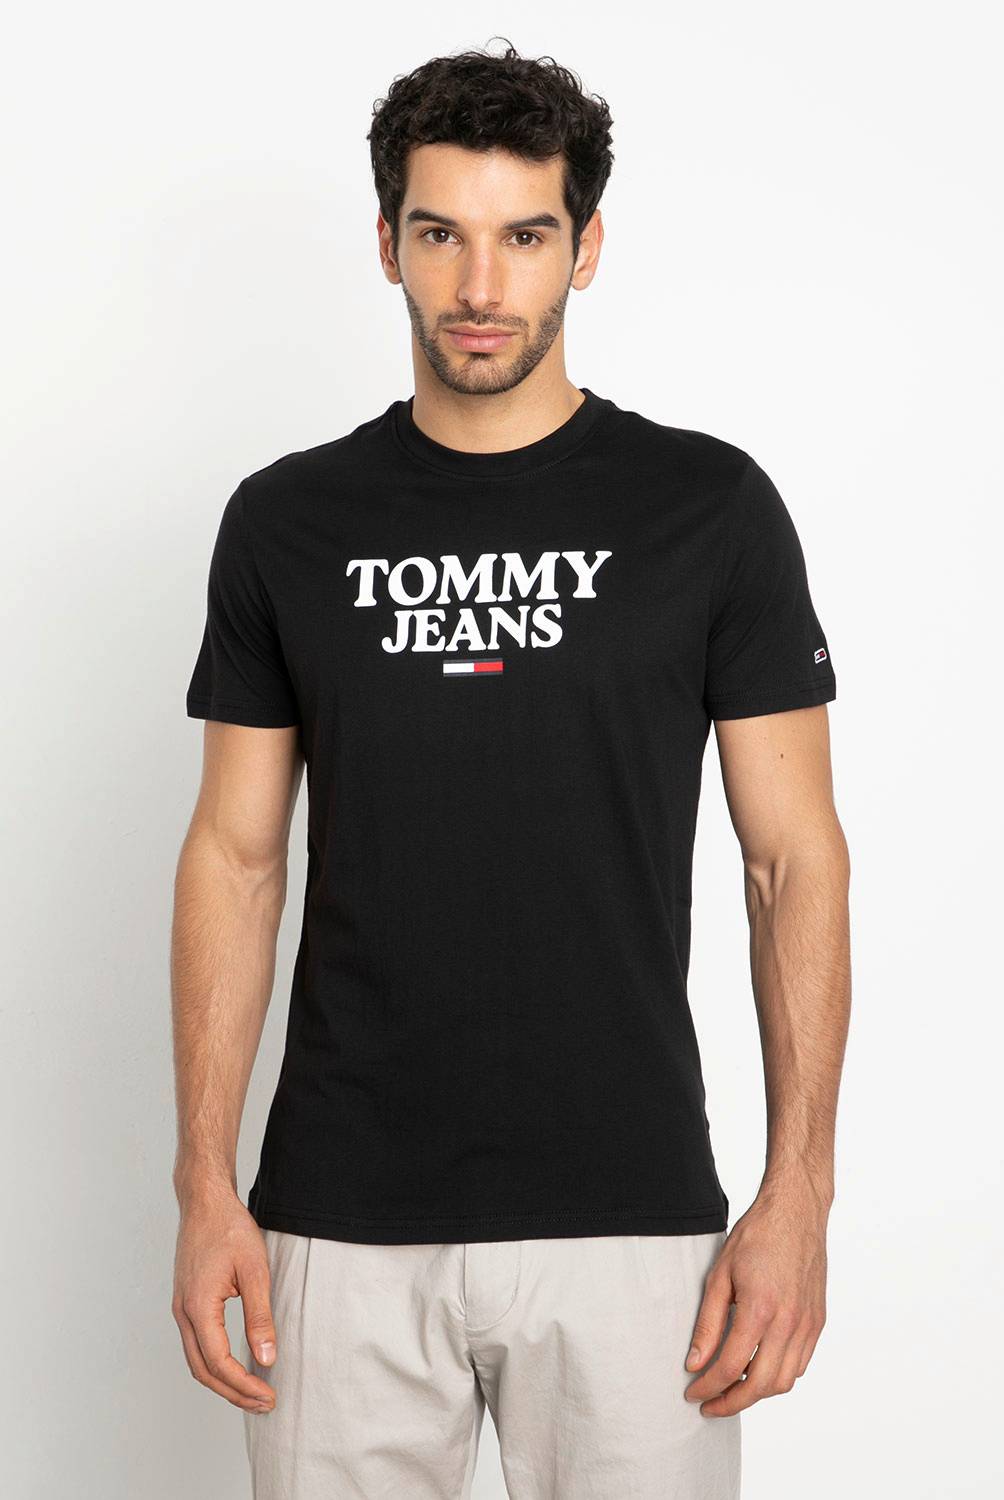 TOMMY JEANS - Polera Manga Corta 100% Algodón Slim Fit Hombre Tommy Jeans